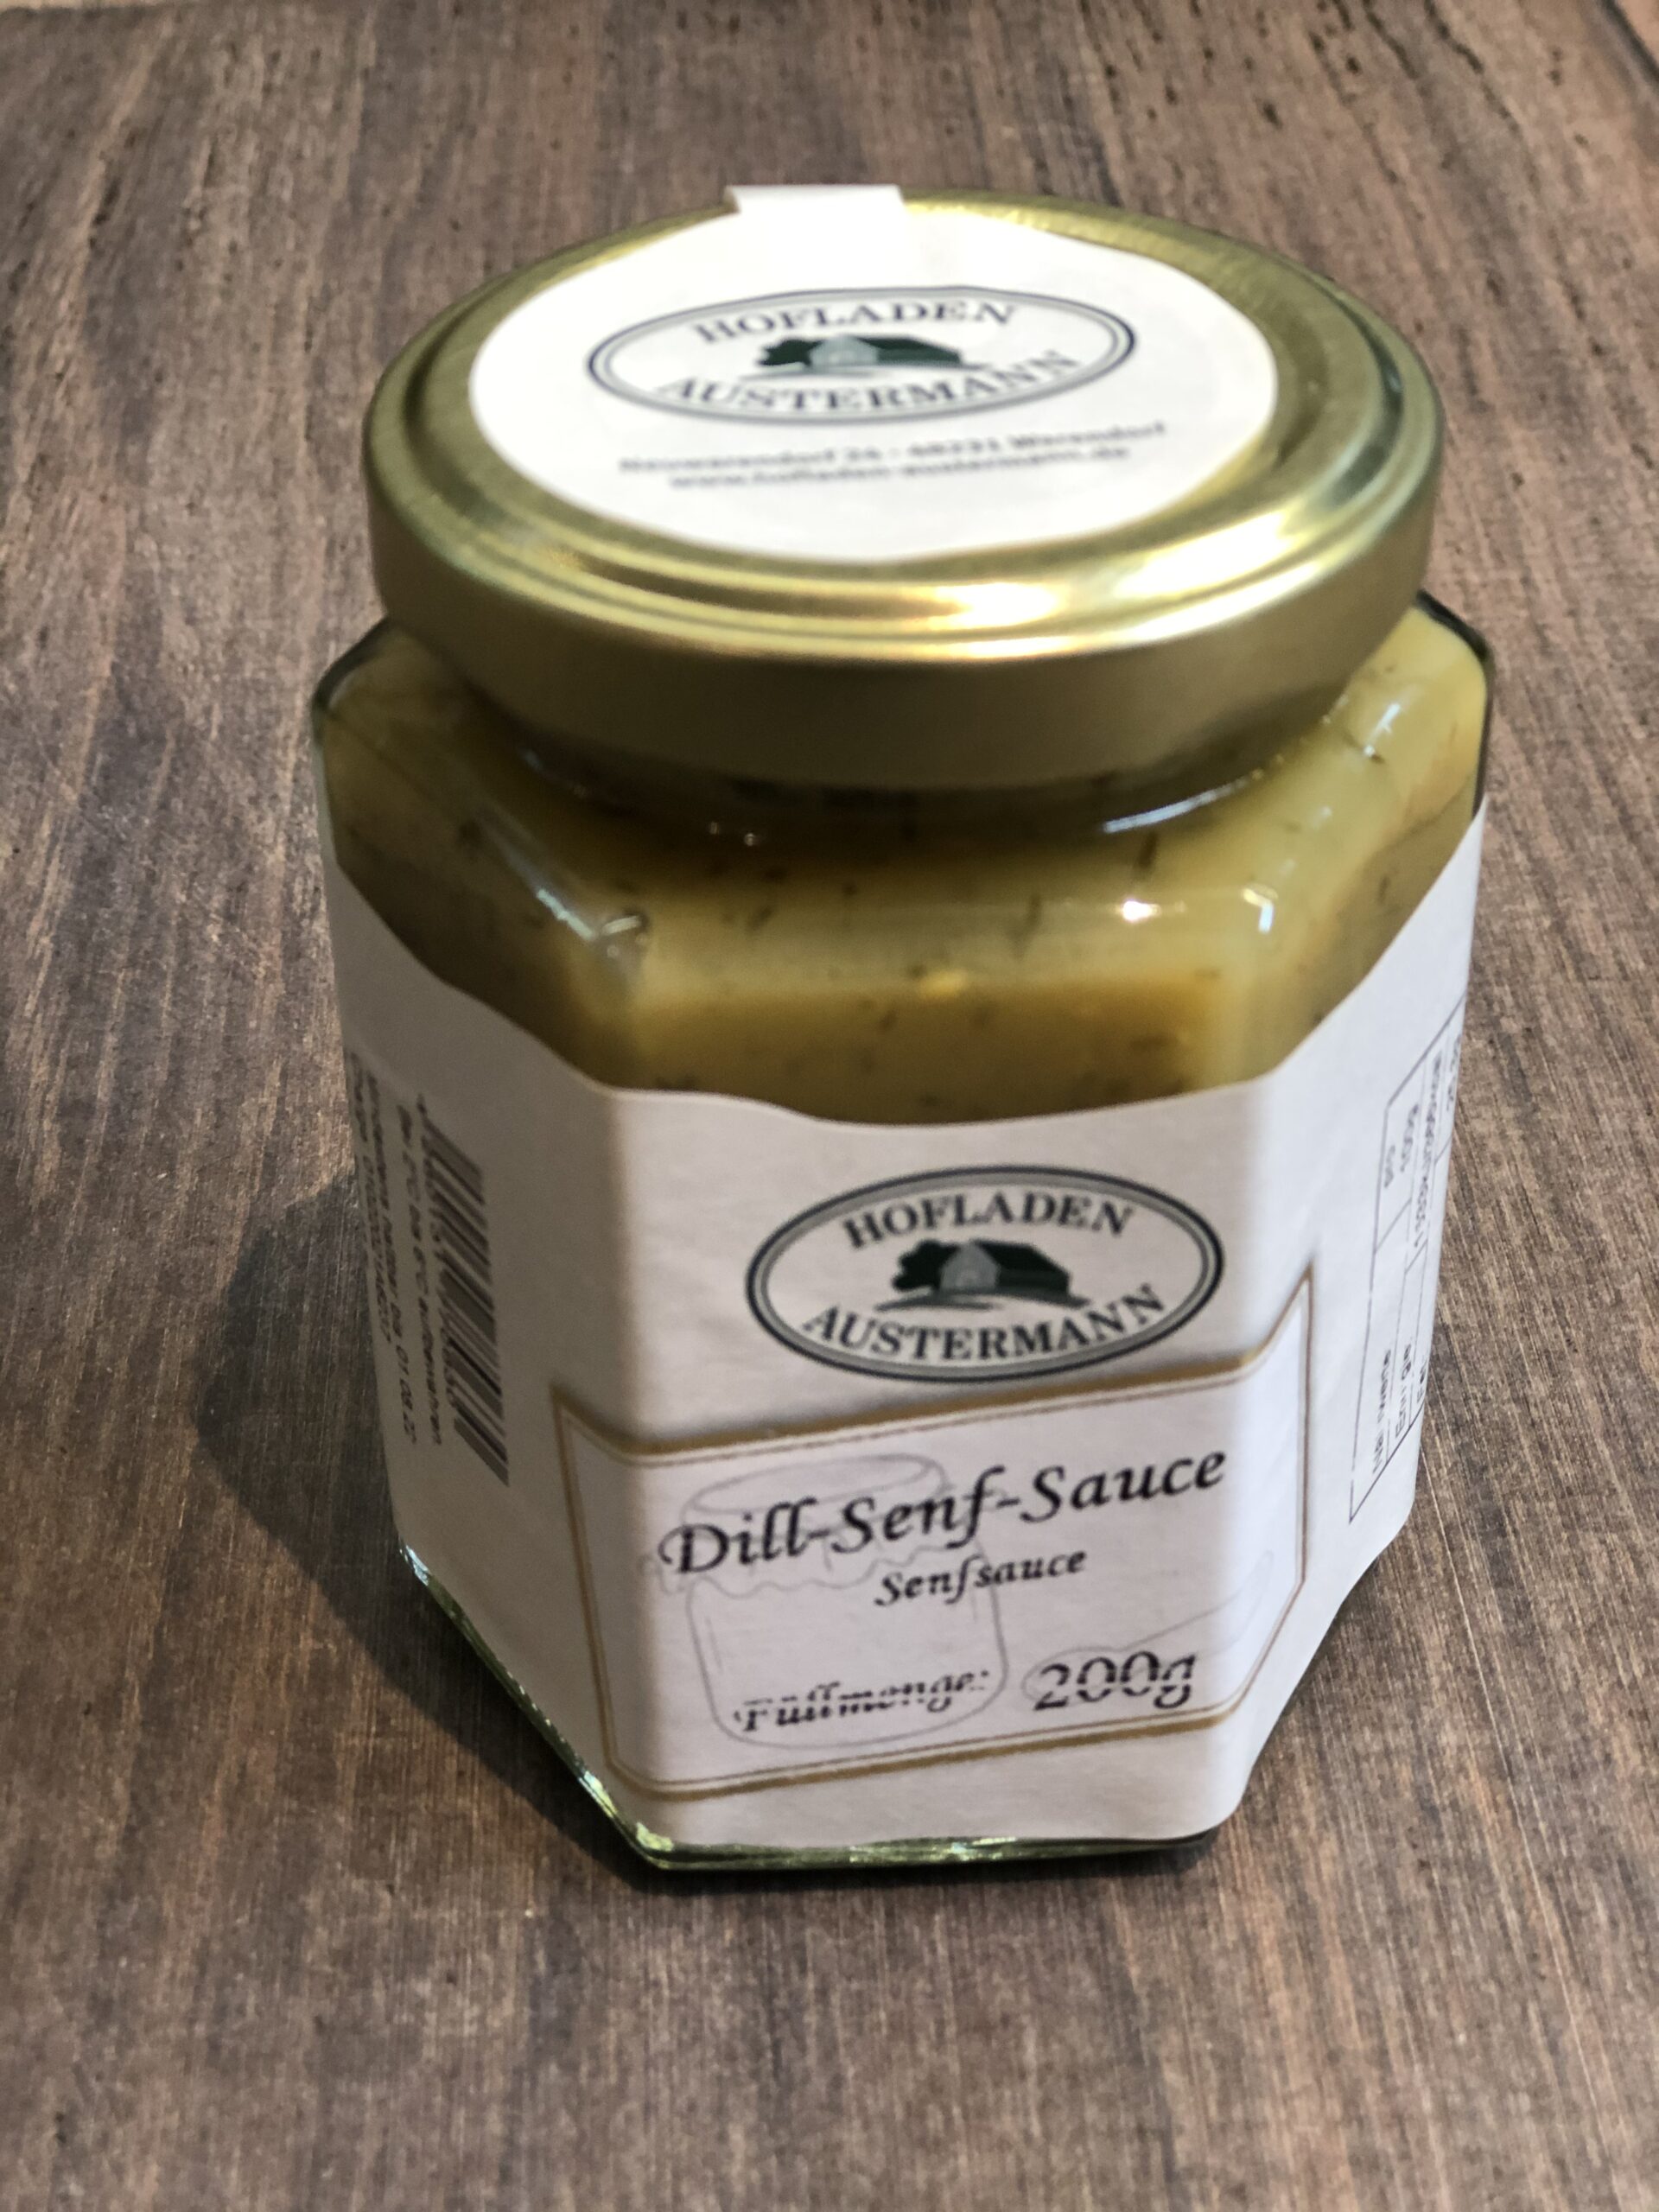 Dill-Senf-Sauce 200g | Hofladen Austermann